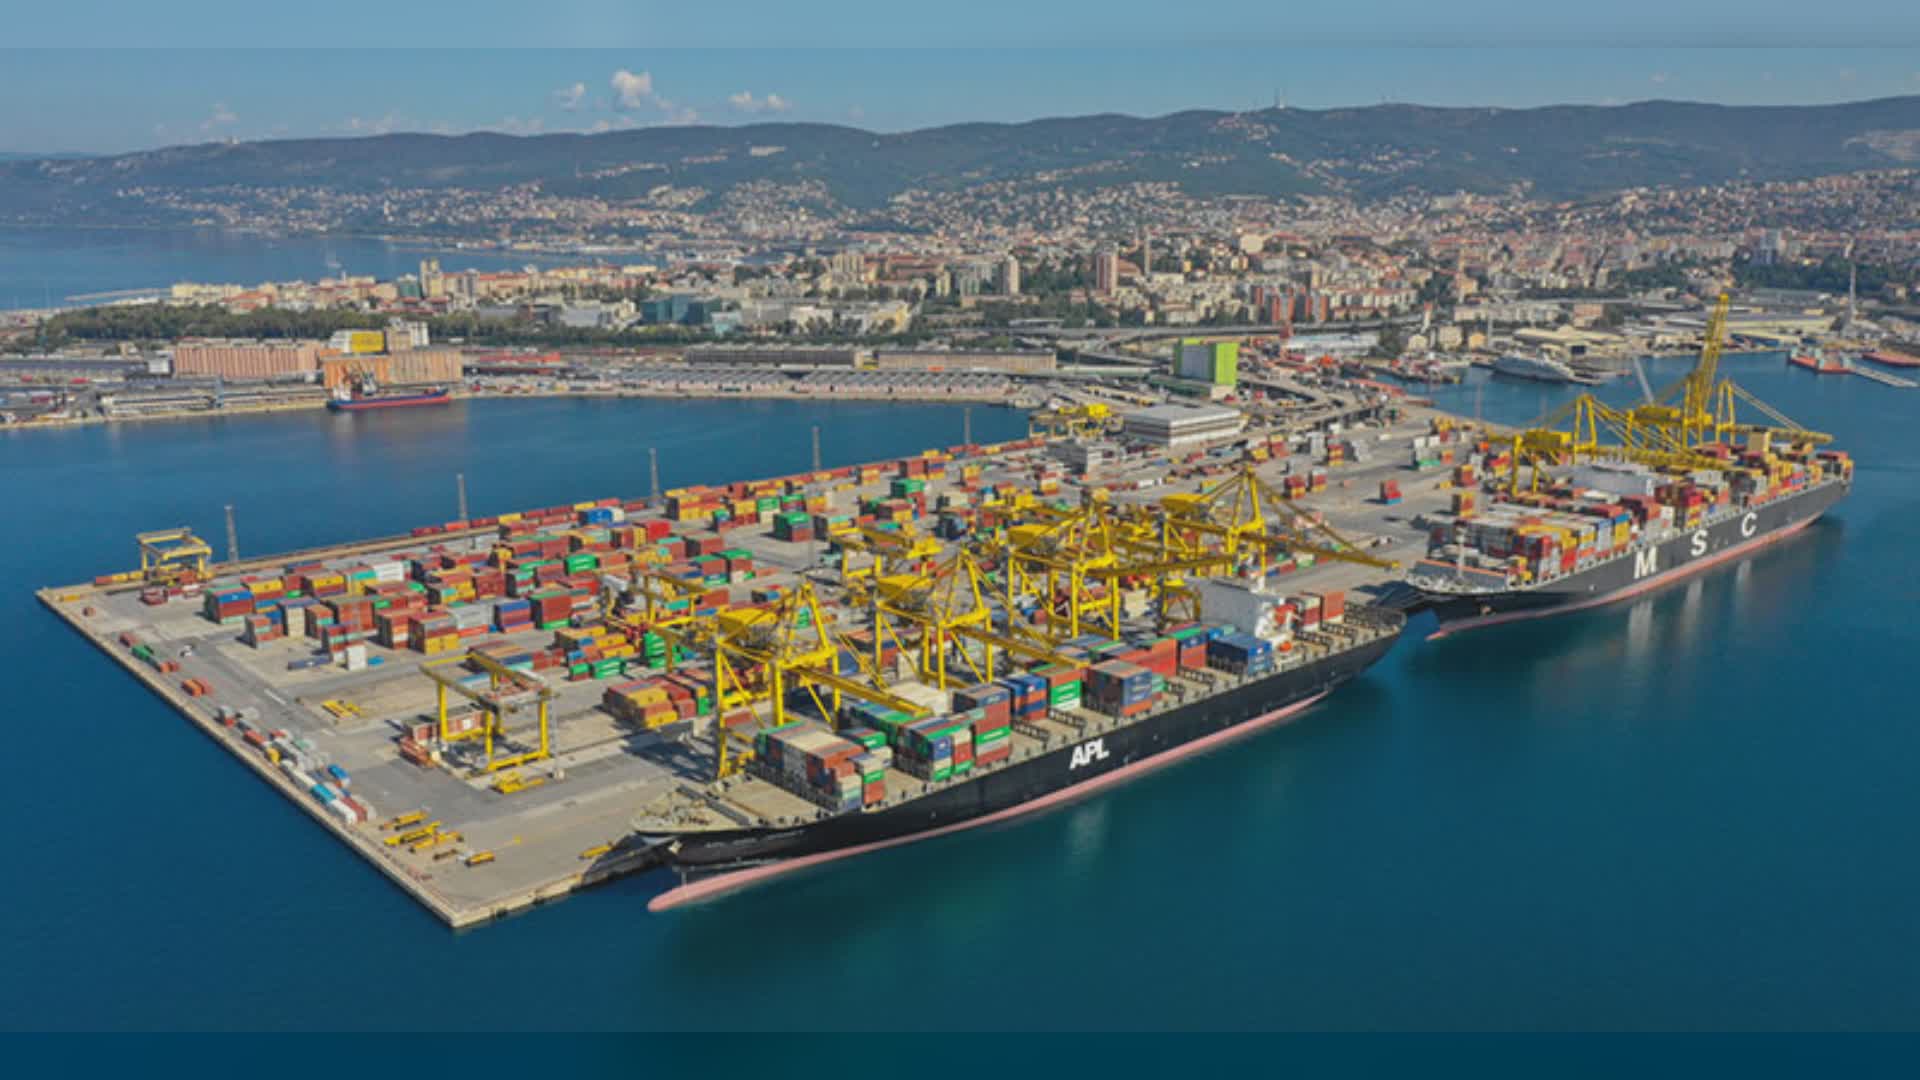 Porto di Trieste in crescita: sempre più appetibile grazie al turismo e al traffico merci